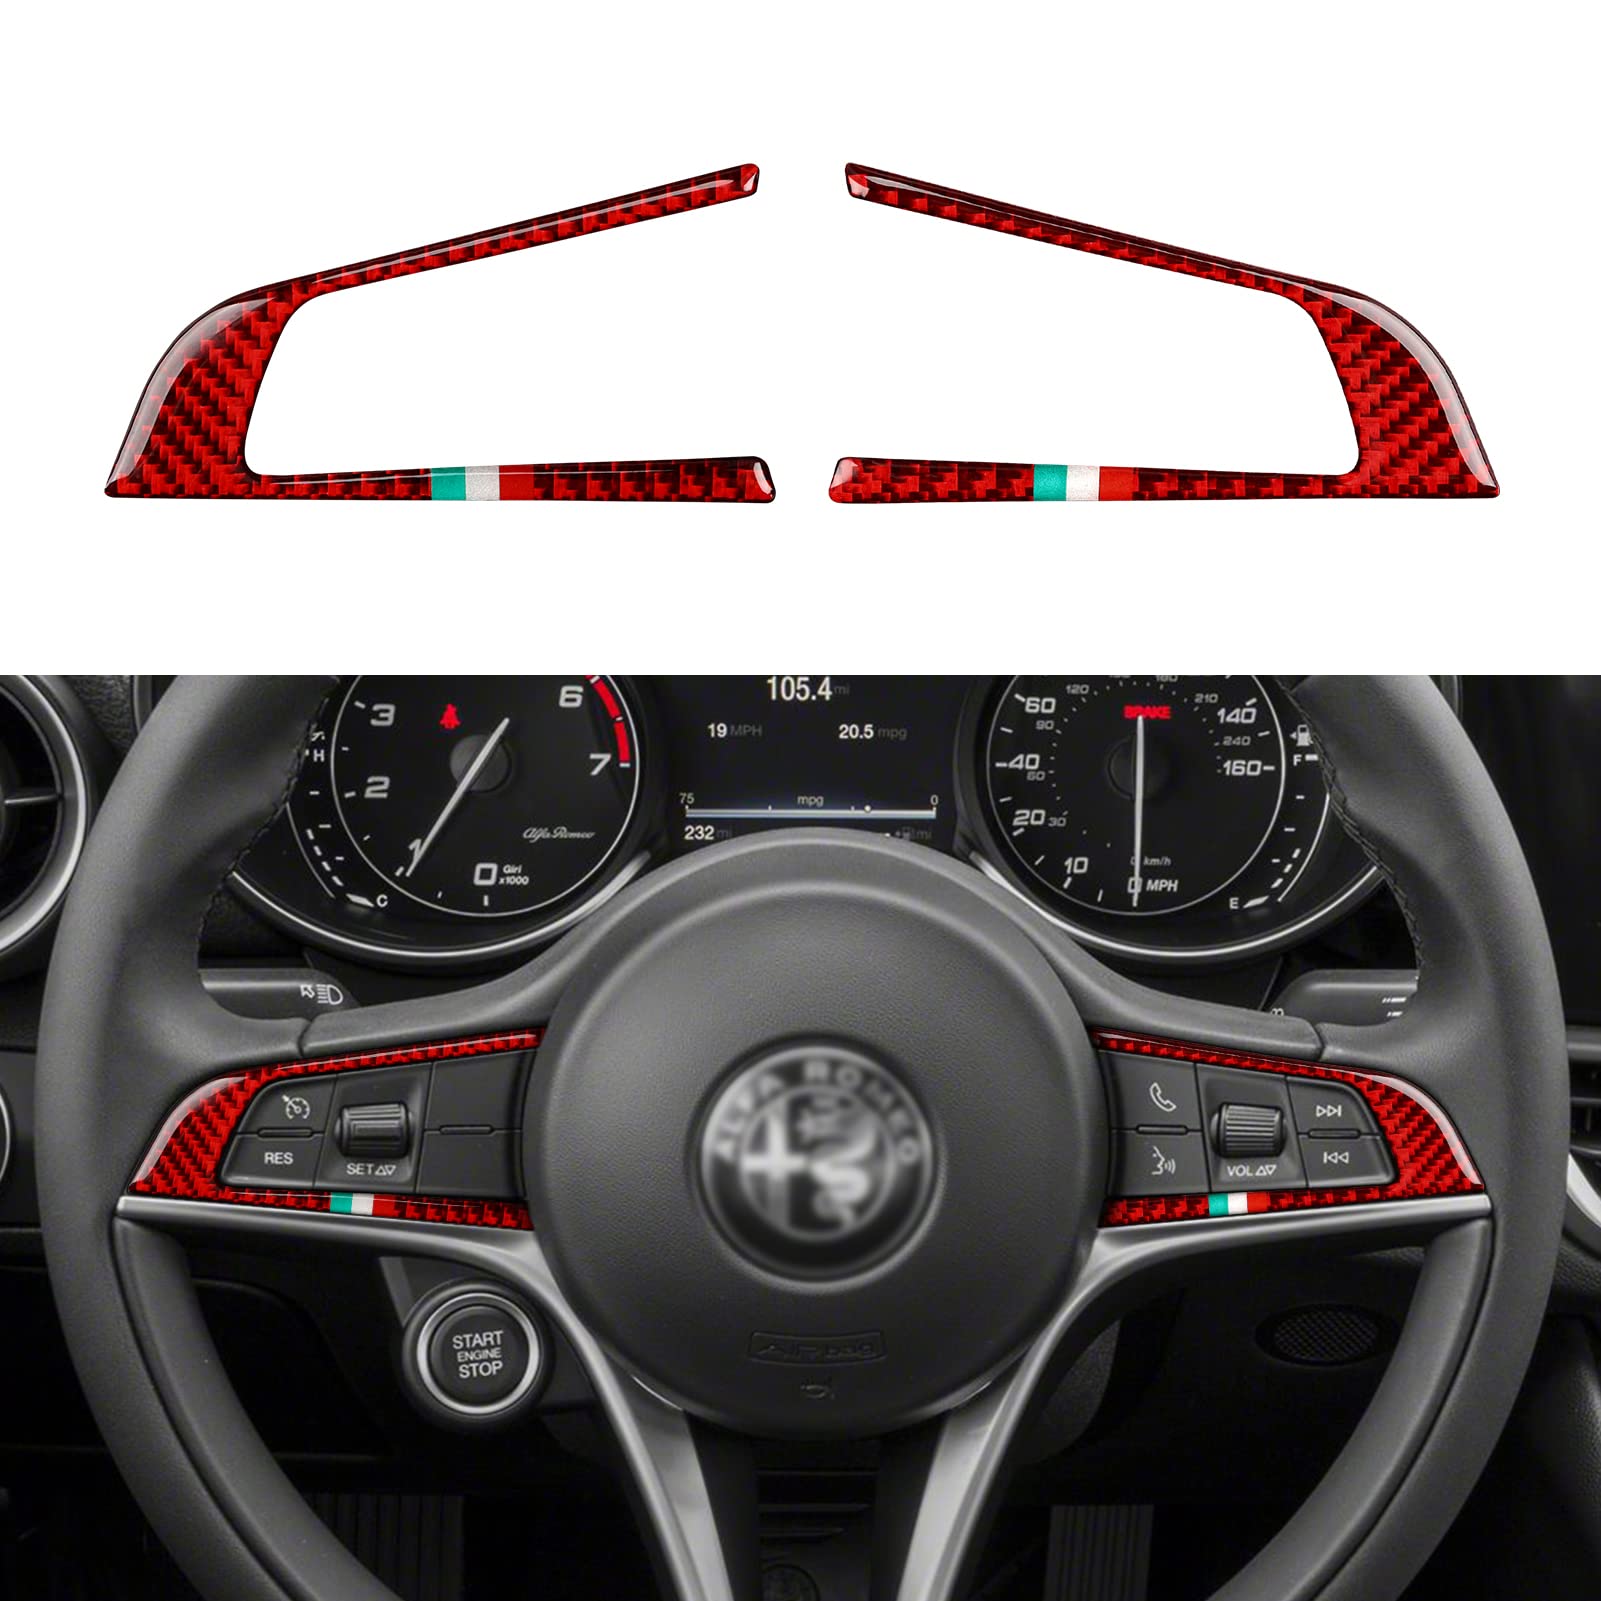 OYDDL Auto Aufkleber Kohlefaser Auto-Lenkradverkleidung Sticker Kompatibel mit Alfa Romeo Giulia Stelvio 2017 2018 2019 Zubehör von OYDDL